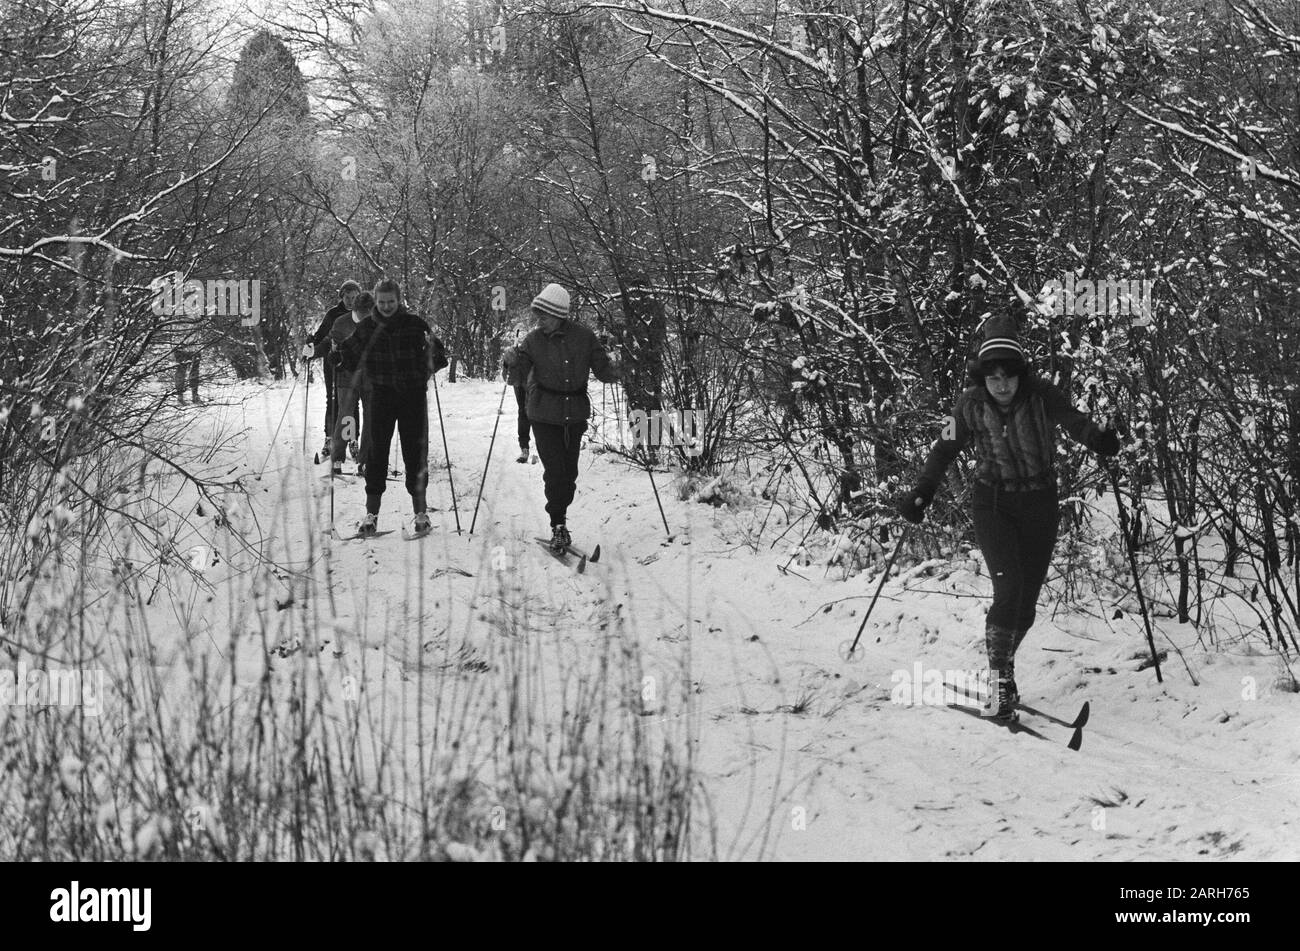 Les sports d'hiver par la neige et le gel intense dans de nombreux endroits ont été des skis de fond piégés comme ici sur le Veluwe Date: 5 janvier 1985 lieu: Gueldre, Veluwe mots clés: Ski de fond Banque D'Images